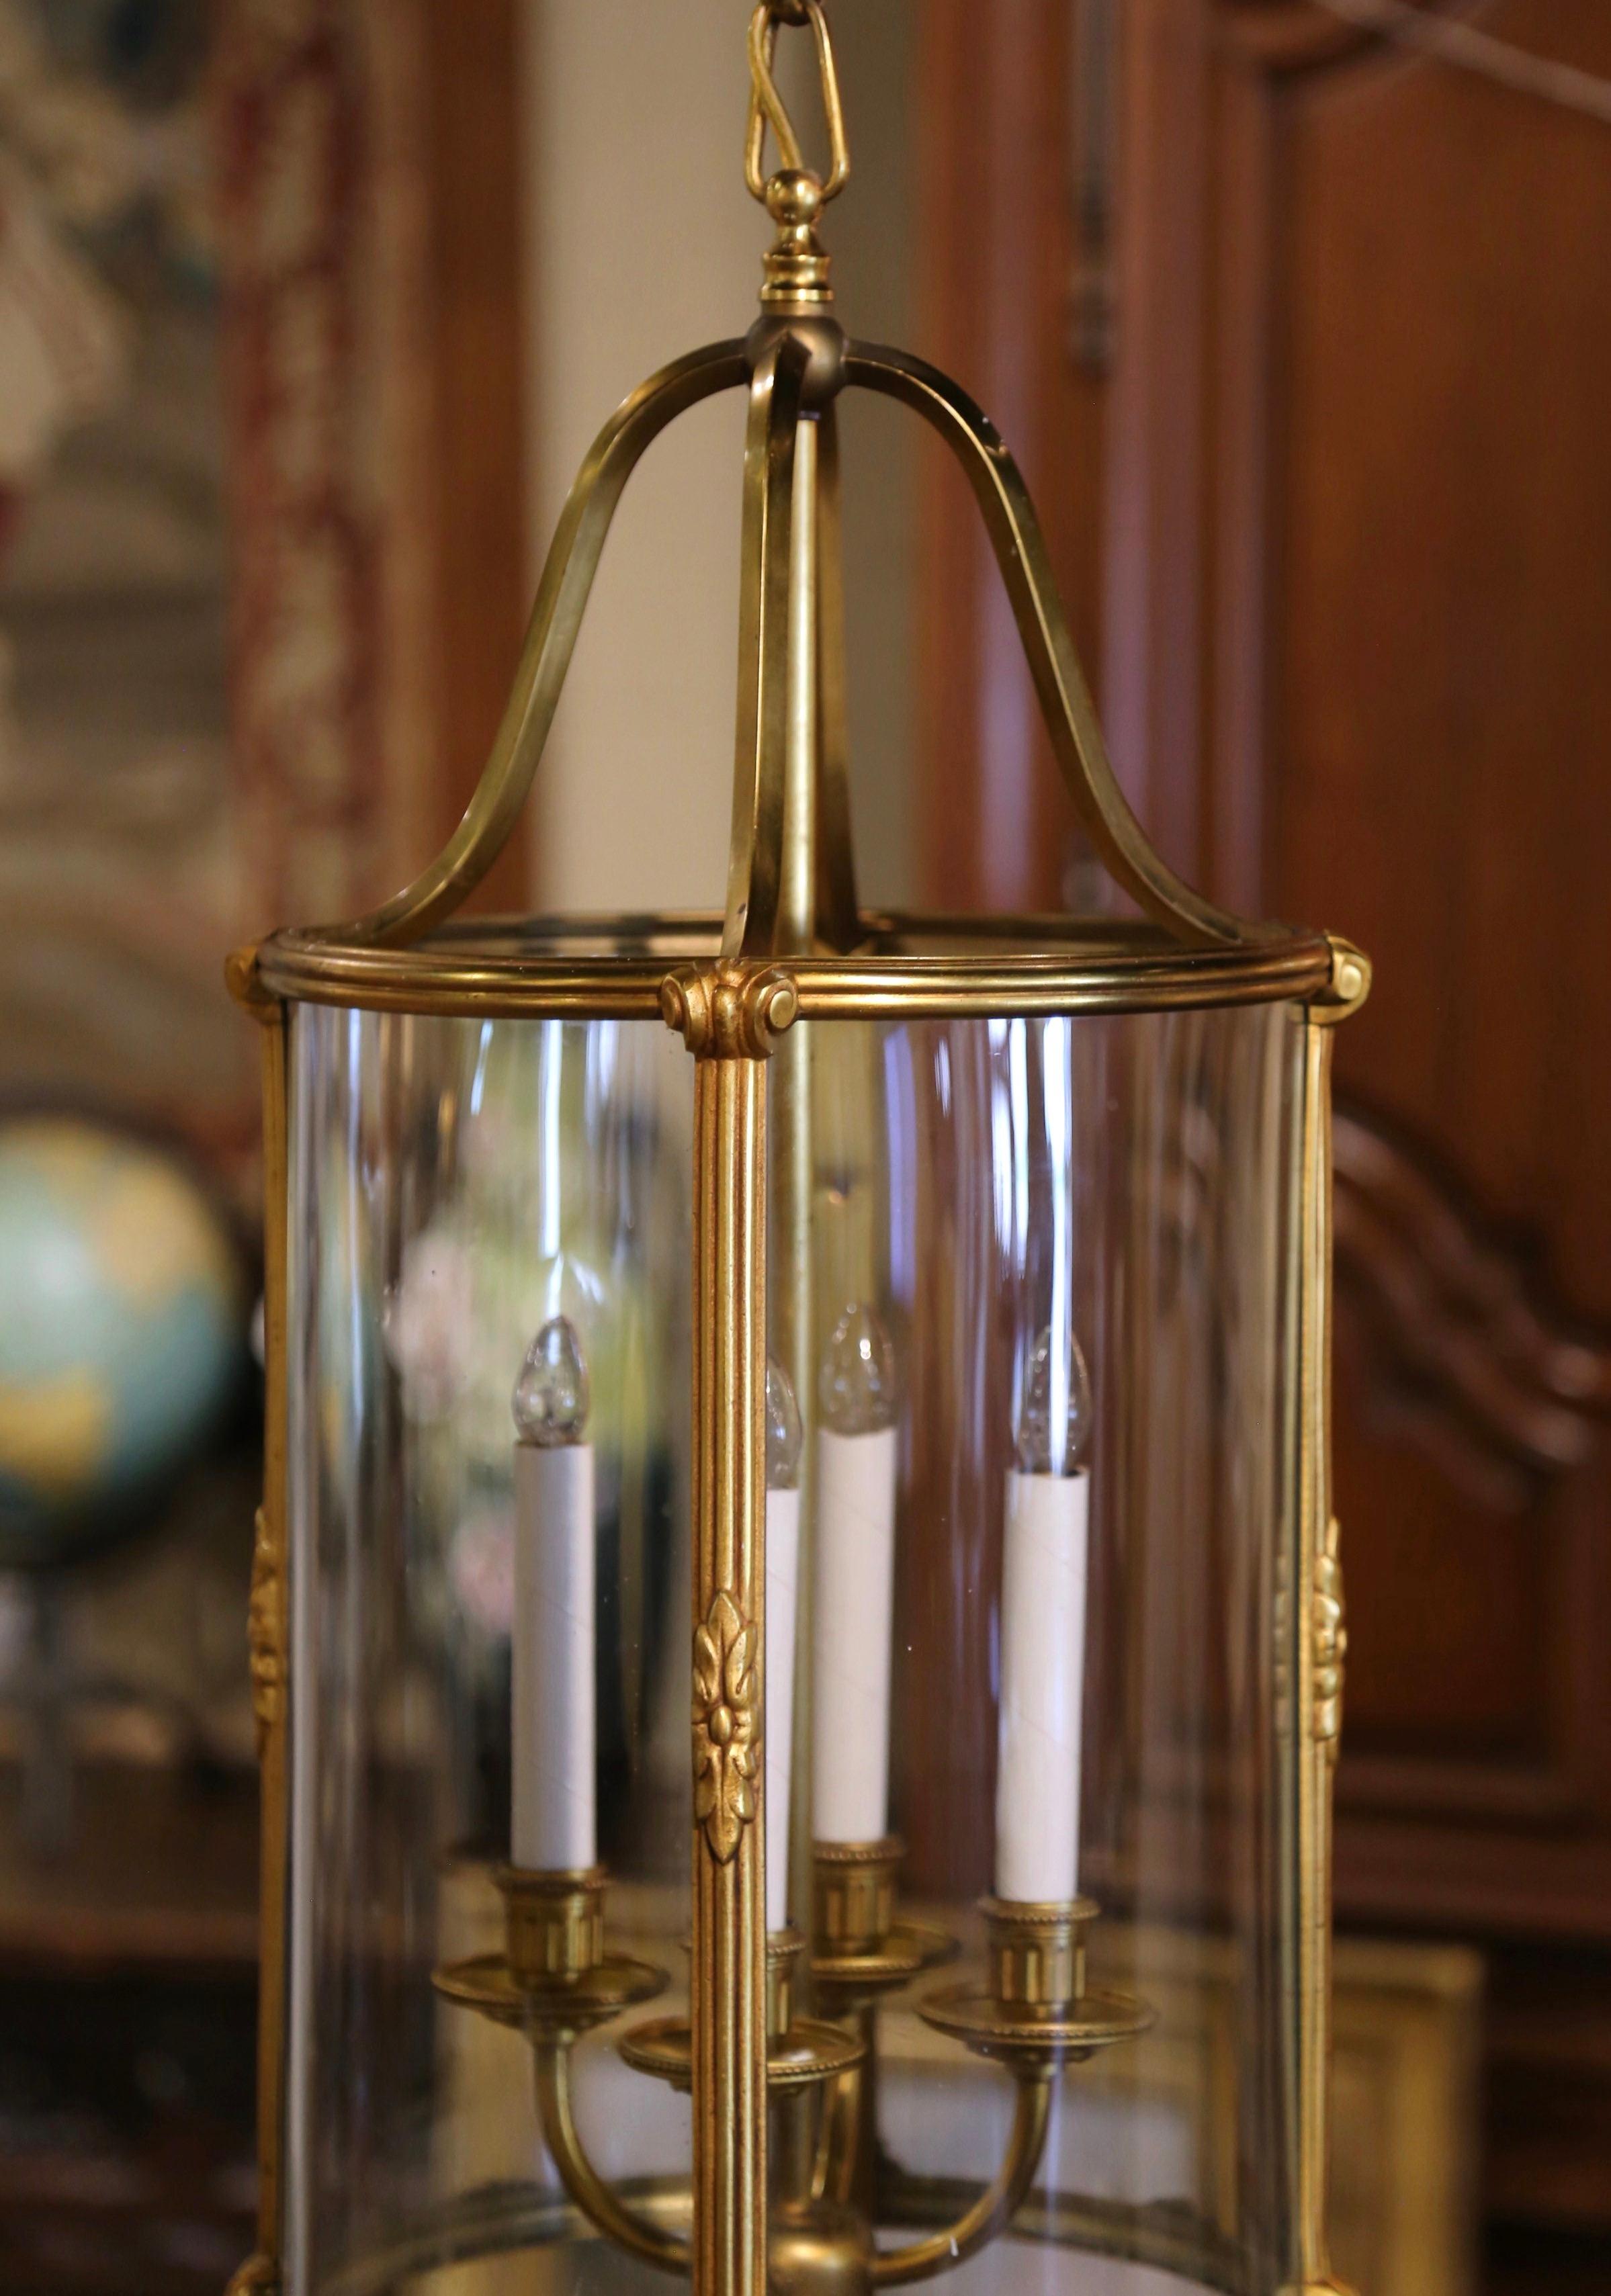 Illuminez votre entrée avec cette élégante lanterne en laiton ; fabriquée en France vers 1970, la haute lanterne ronde est ornée de quatre cloisons en laiton décorées de motifs de feuillage et se terminant par un fleuron central à la base. Cette